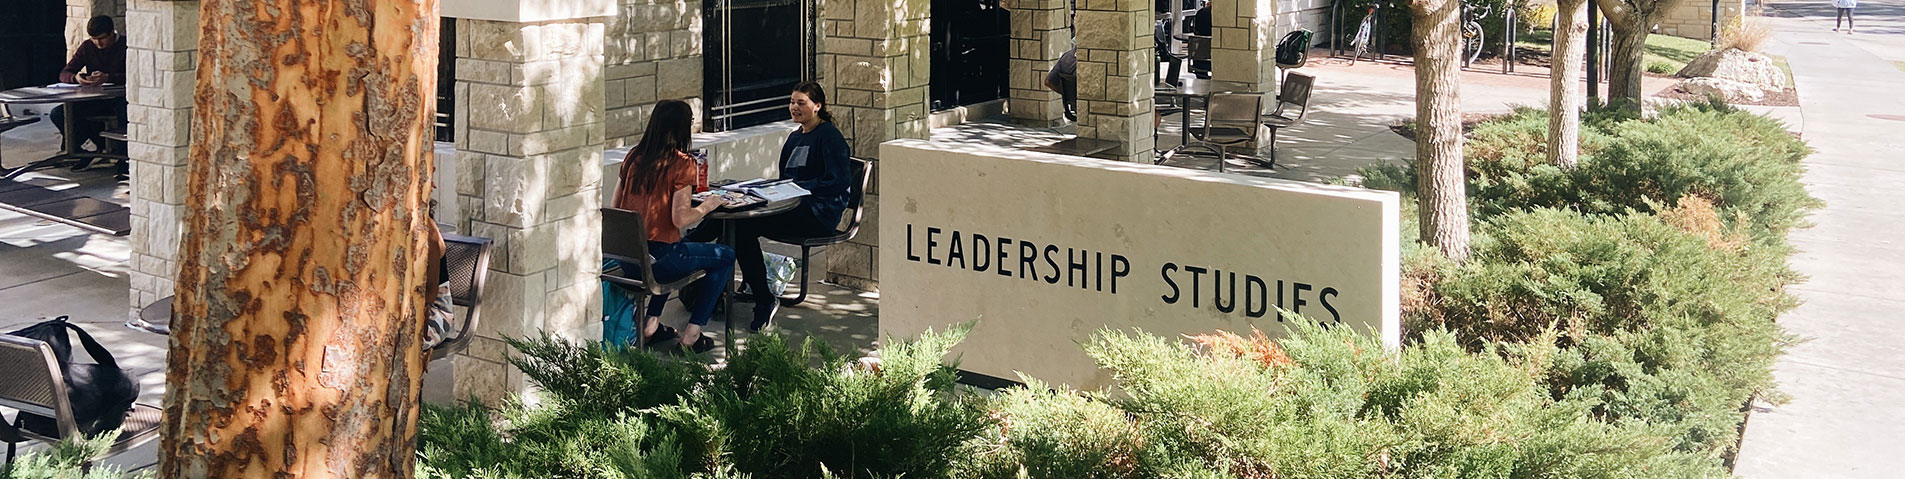 Leadership studies building sign